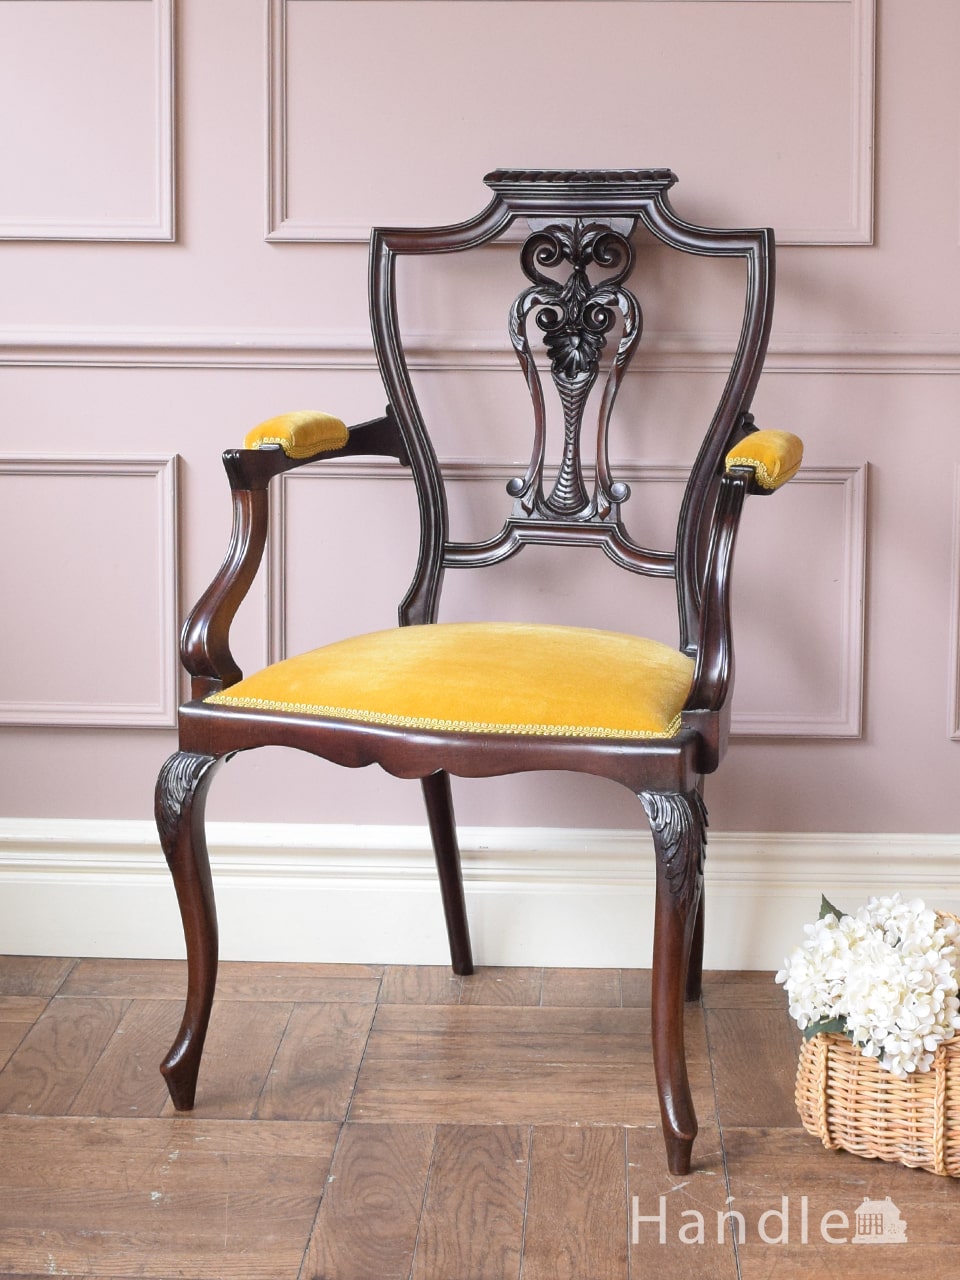 英国アンティークのおしゃれな椅子、ビクトリアスタイルのマホガニー材のアームチェアー (q-537-c)